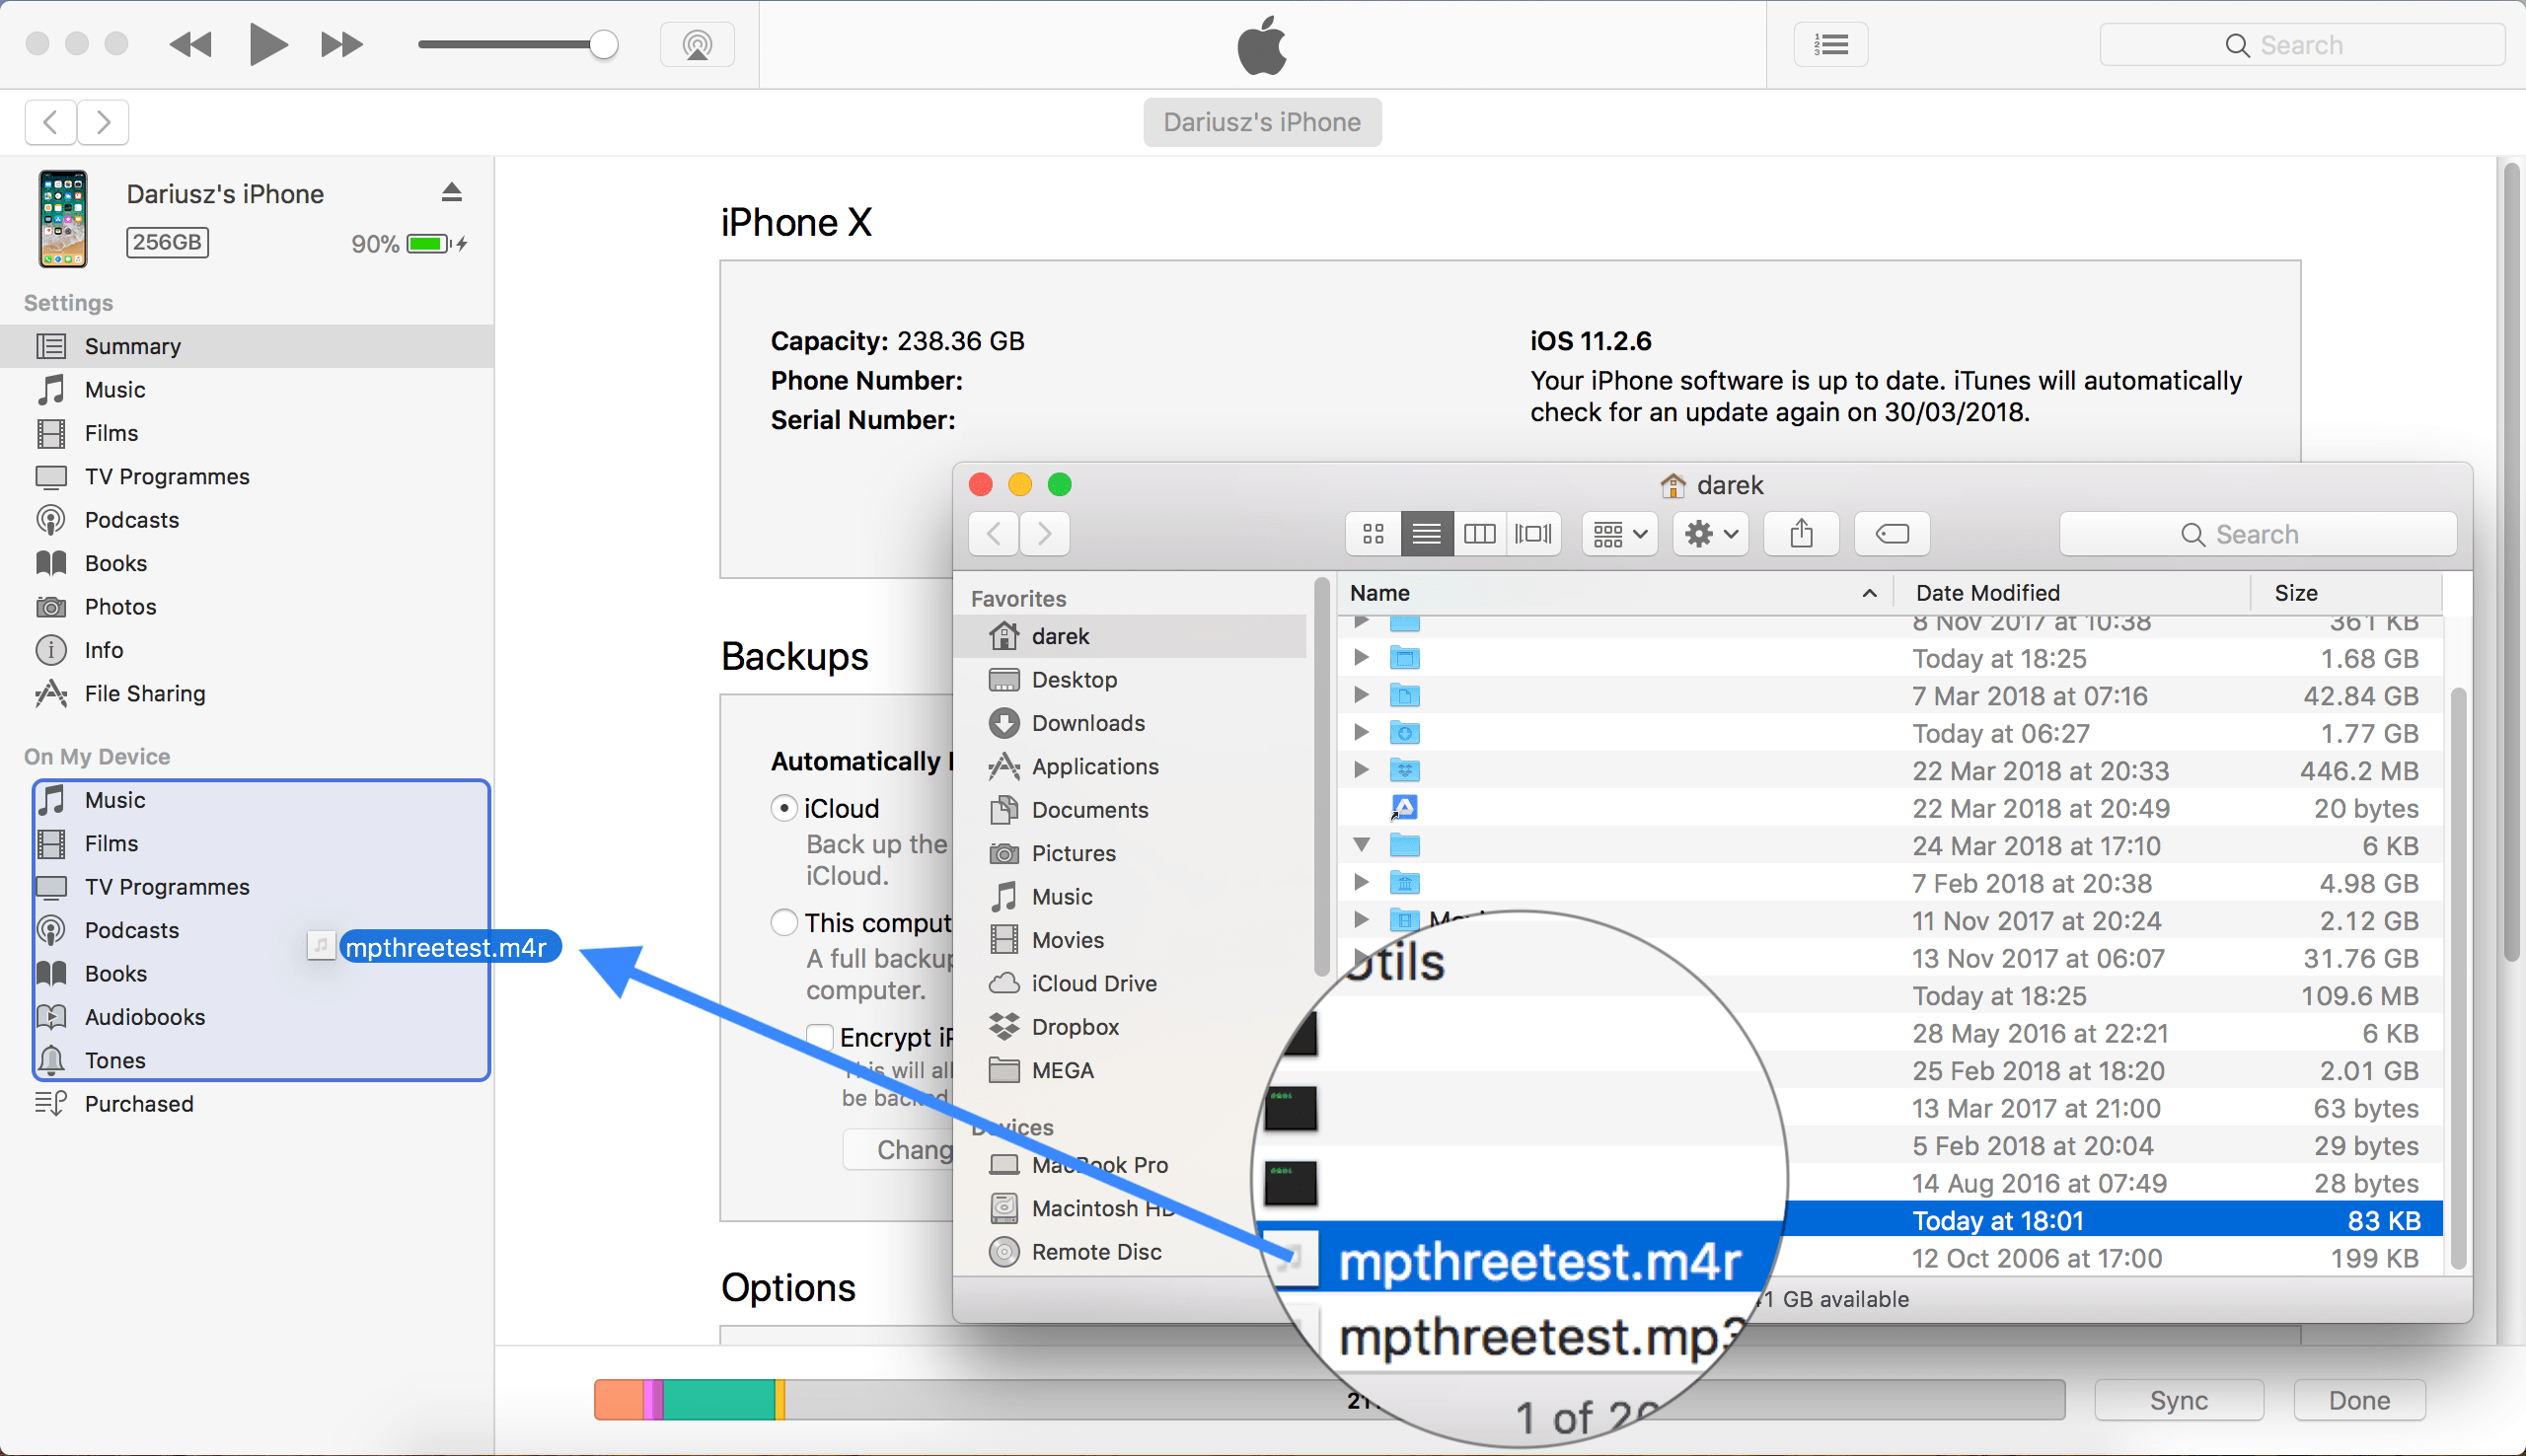 Jak dodać dzwonek do iPhone w iTunes 12.7 lub nowszym